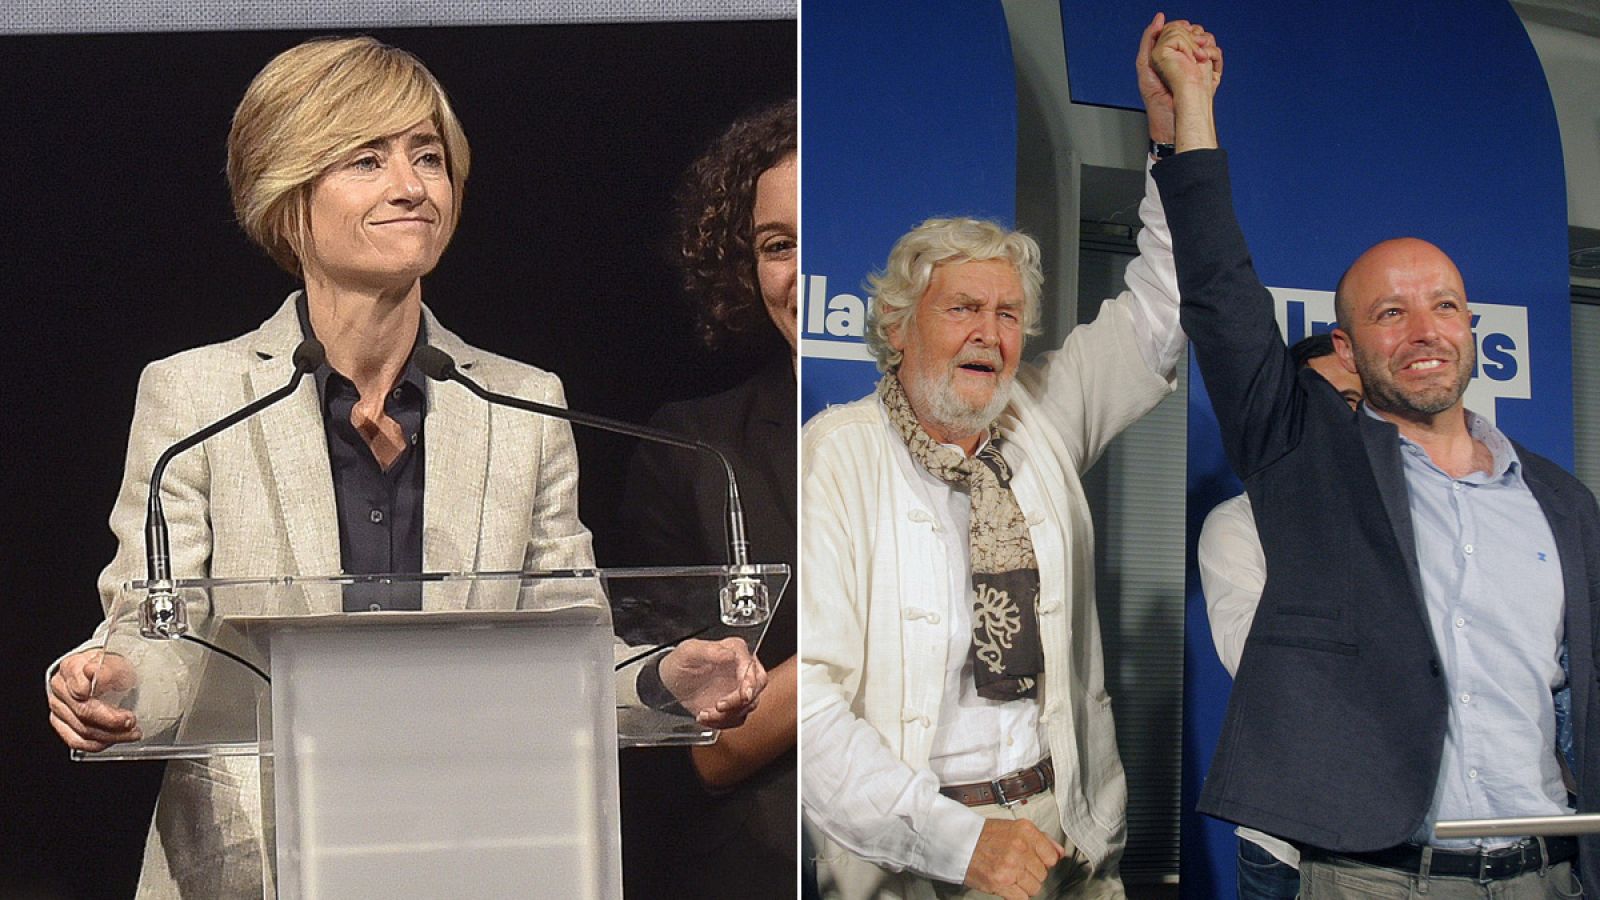 La candidata a lehendakari de Elkarrekin Podemos, Pili Zabala (I) y el candidato de En Marea a la presidencia de la Xunta gallega, Luis Villares (D) junto a Xosé Manuel Beiras(C).